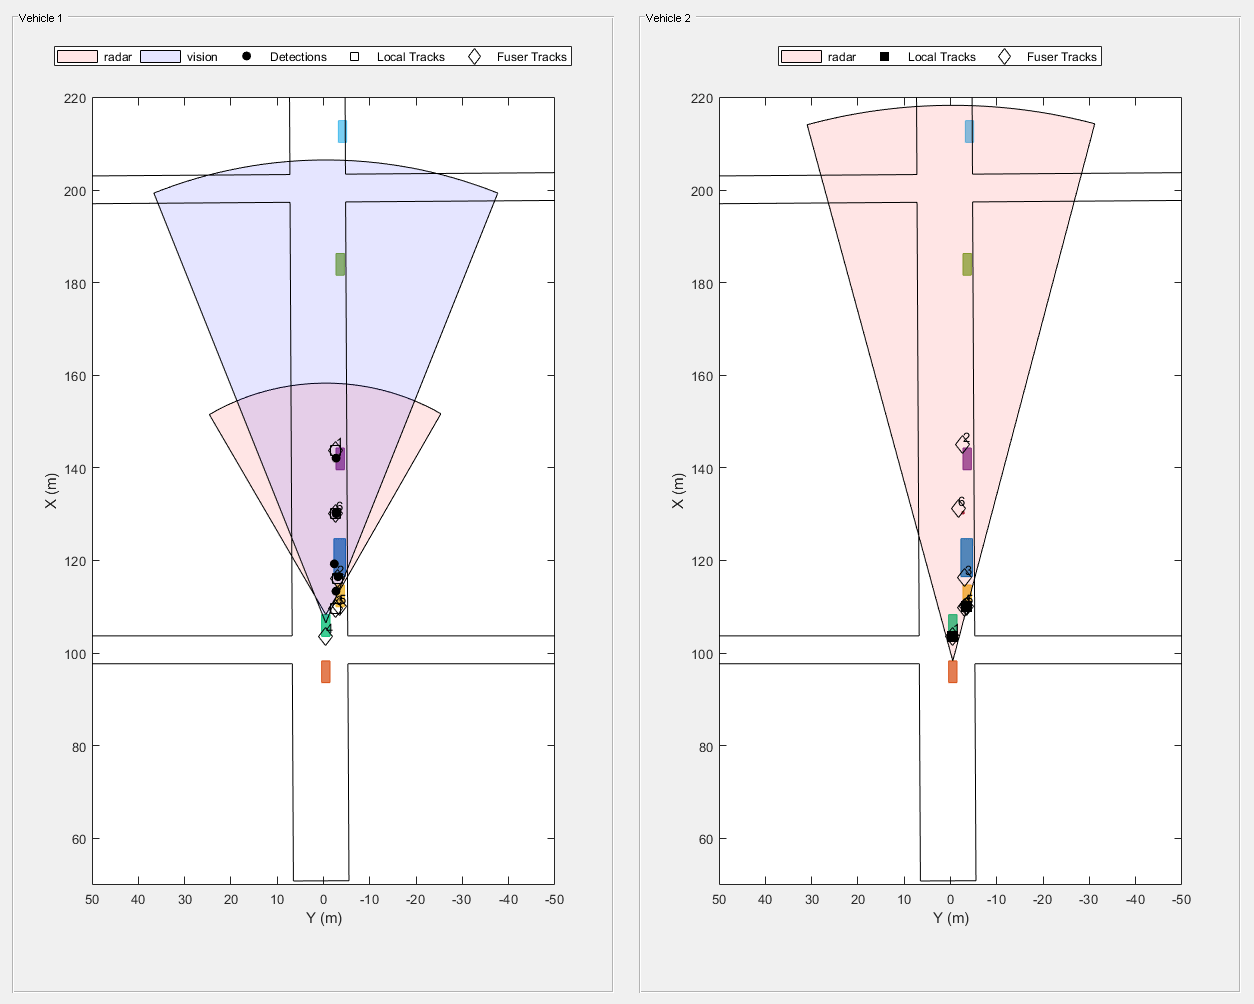 图拍# 2包含2轴uipanel类型的对象和其他对象。坐标轴对象1包含X (m), ylabel Y (m)包含11块类型的对象,线,文本。一个或多个行显示的值只使用这些对象标记代表雷达、视觉,检测,当地的追踪,熔化炉的踪迹。坐标轴对象2包含X (m), ylabel Y (m)包含9块类型的对象,线,文本。一个或多个行显示的值只使用这些对象标记代表雷达,当地的追踪,熔化炉的踪迹。